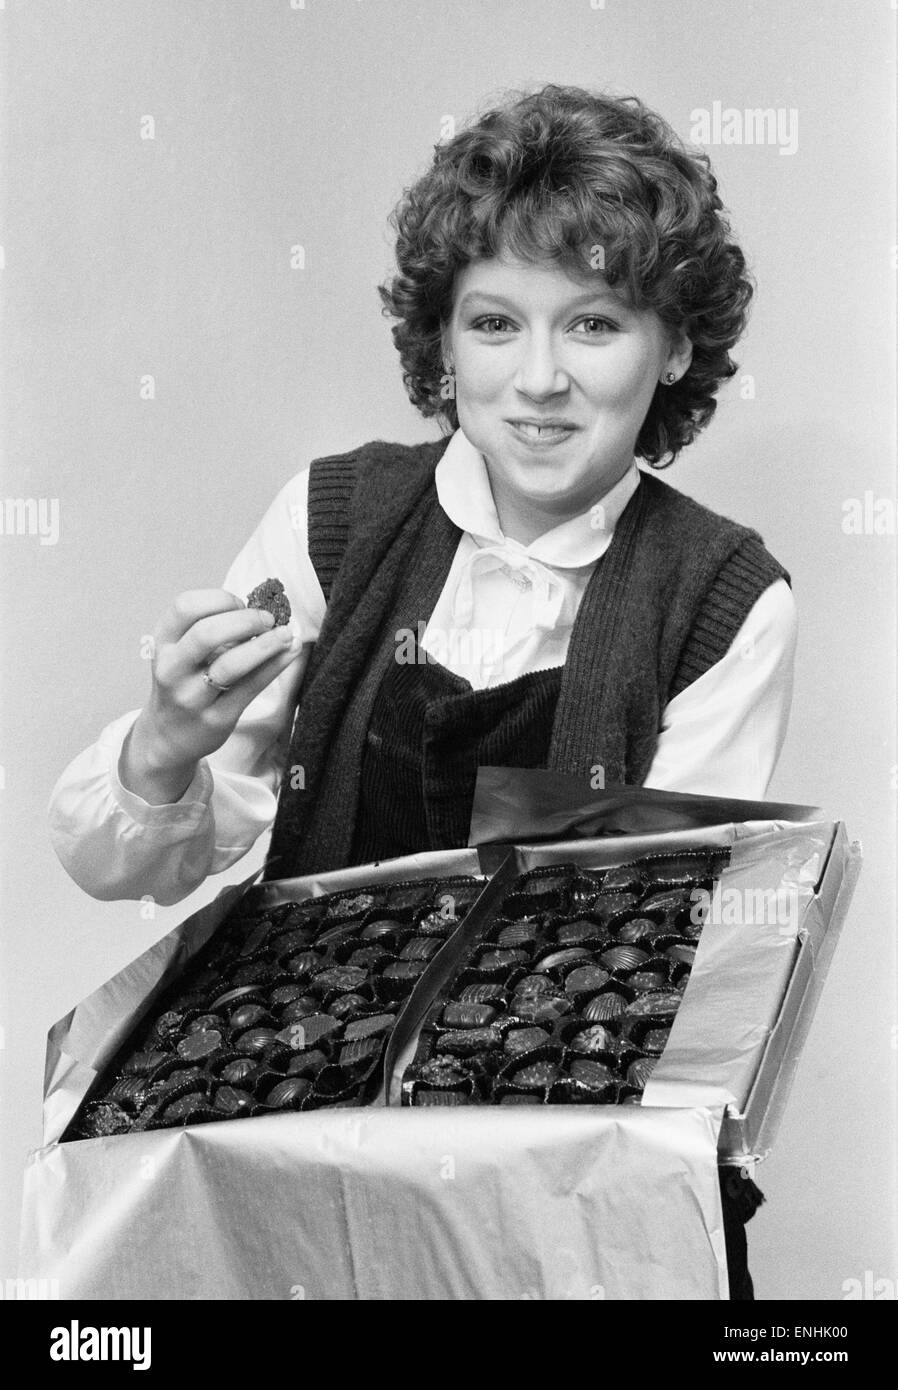 Lena Zavaroni, im Alter von 16 Jahren Essen aus Schachtel Pralinen, Januar 1980. Lena erhielt die Pralinen von Fans als ein "Get Well Soon" nach einem Aufenthalt im Krankenhaus mit Kolitis. Stockfoto